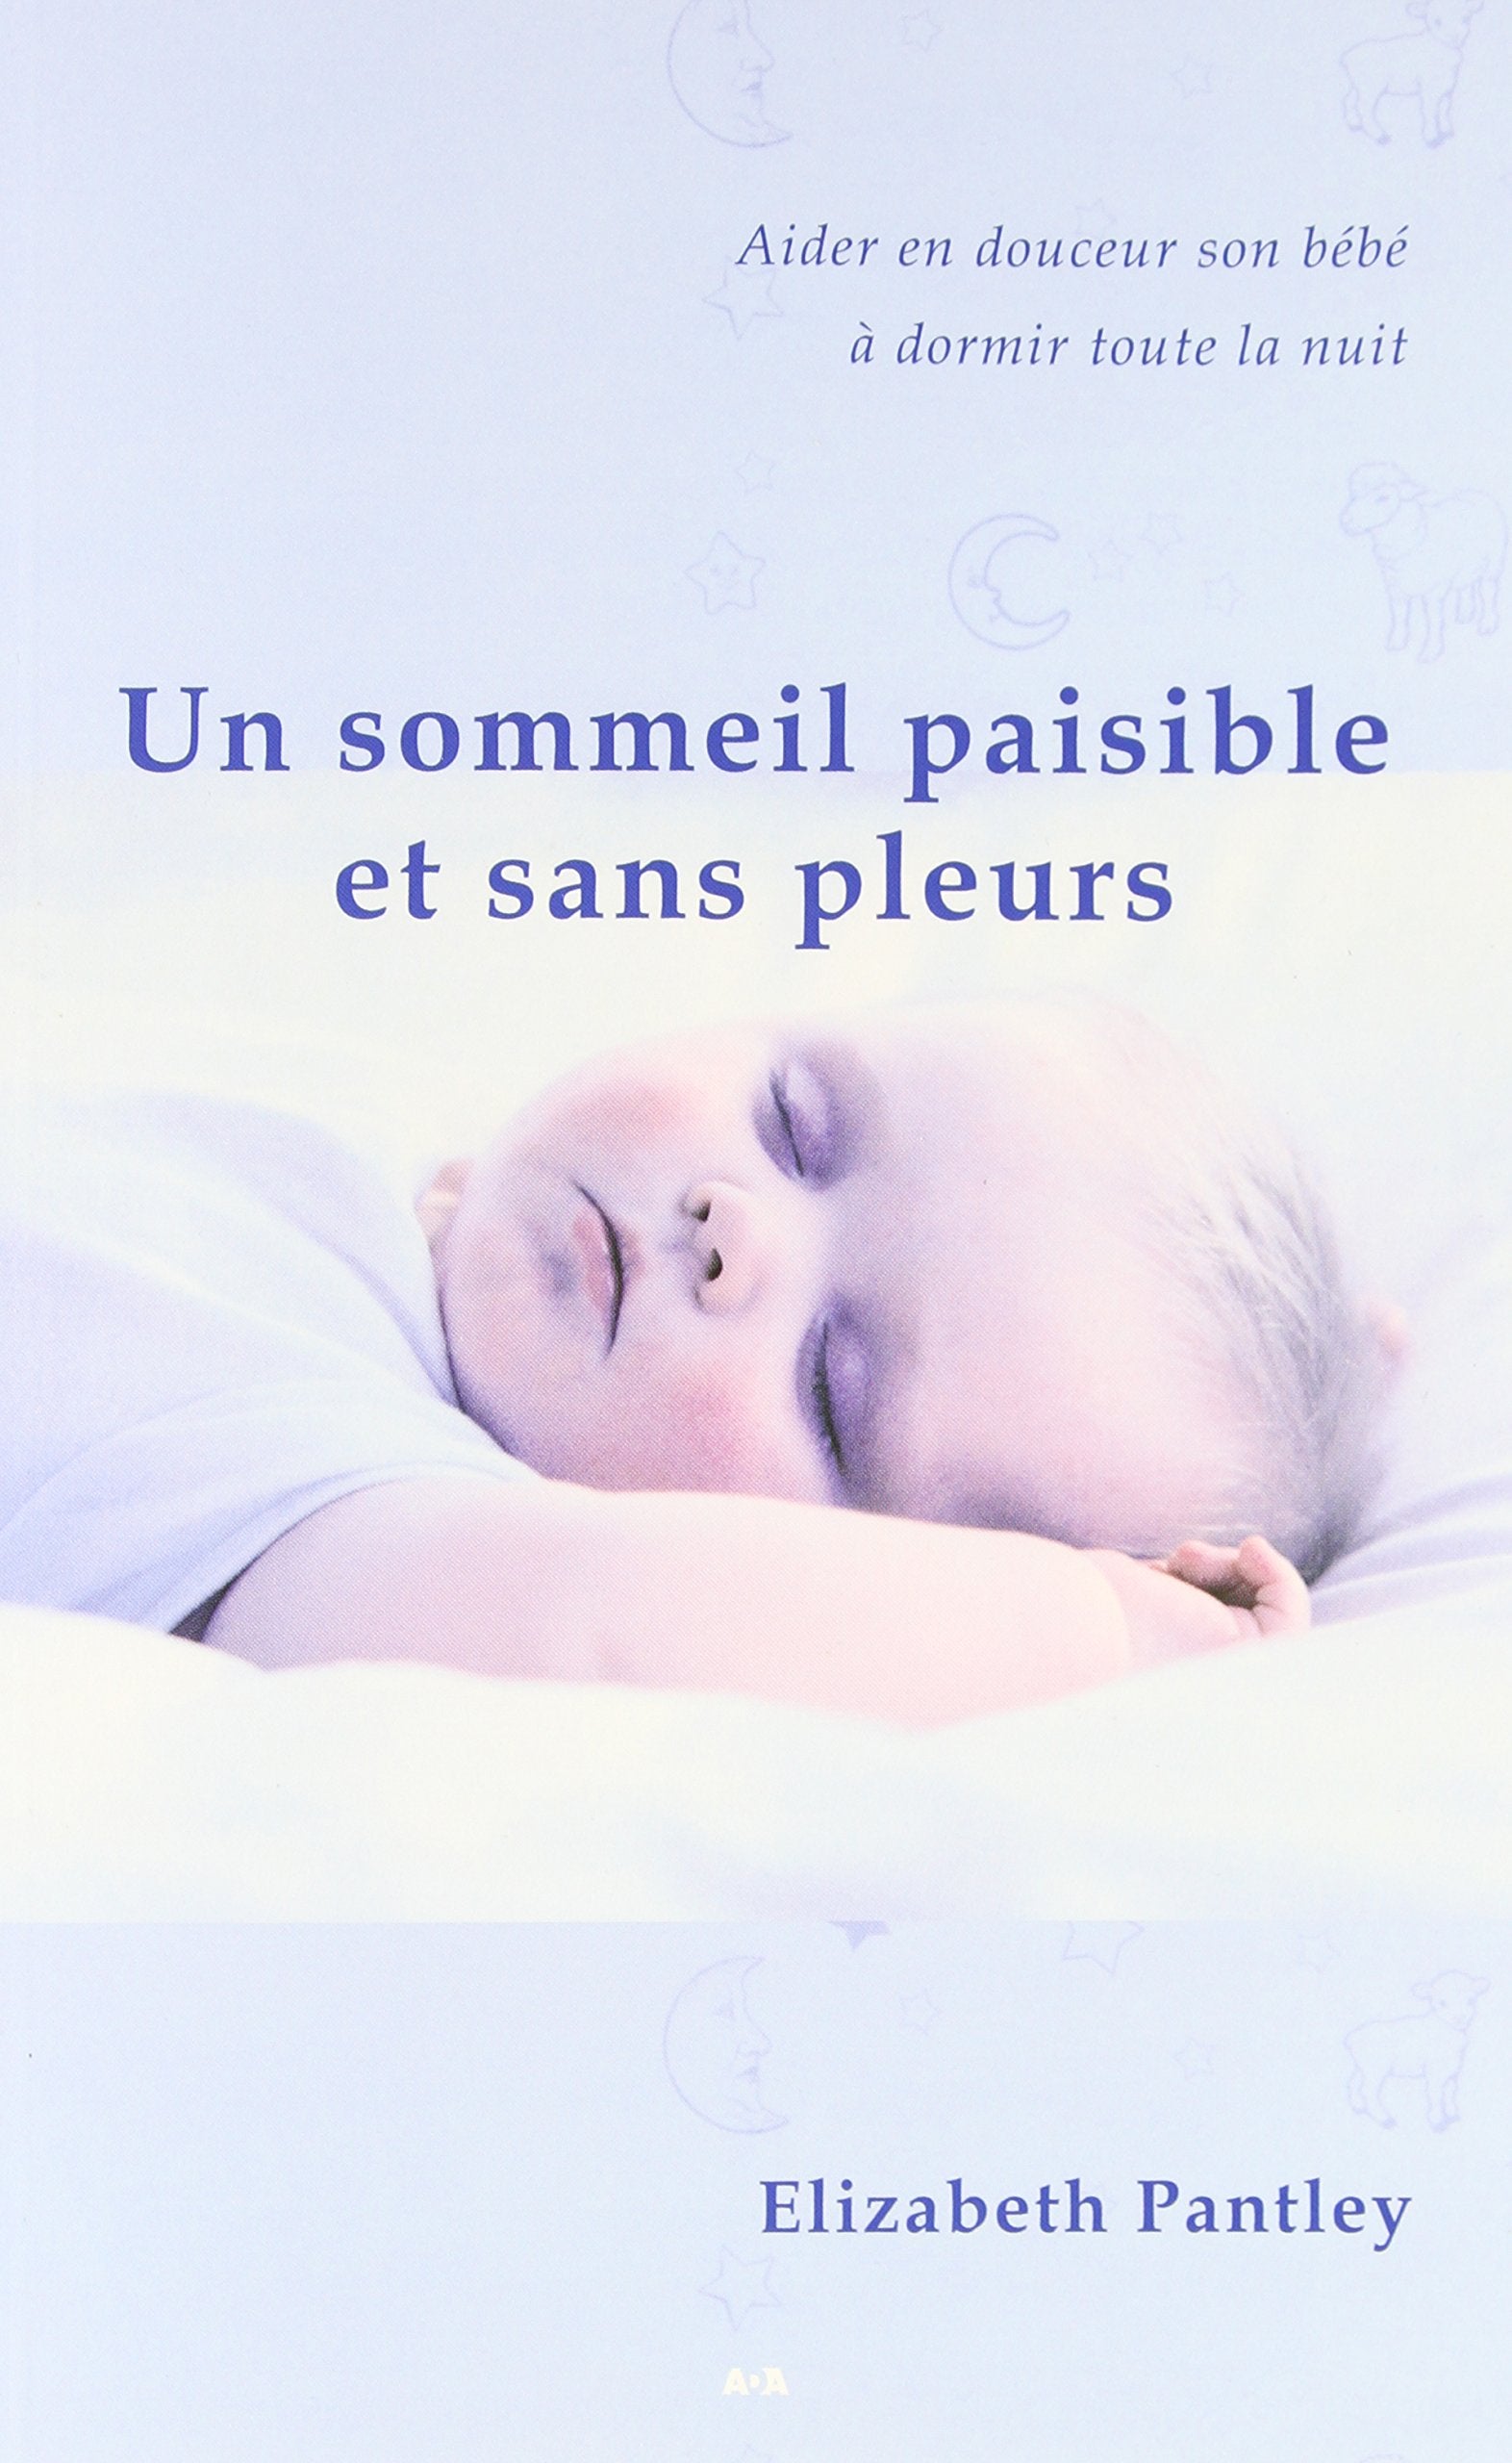 Livre ISBN 2895652228 Un sommeil paisible et sans pleurs (Elizabeth Pantley)